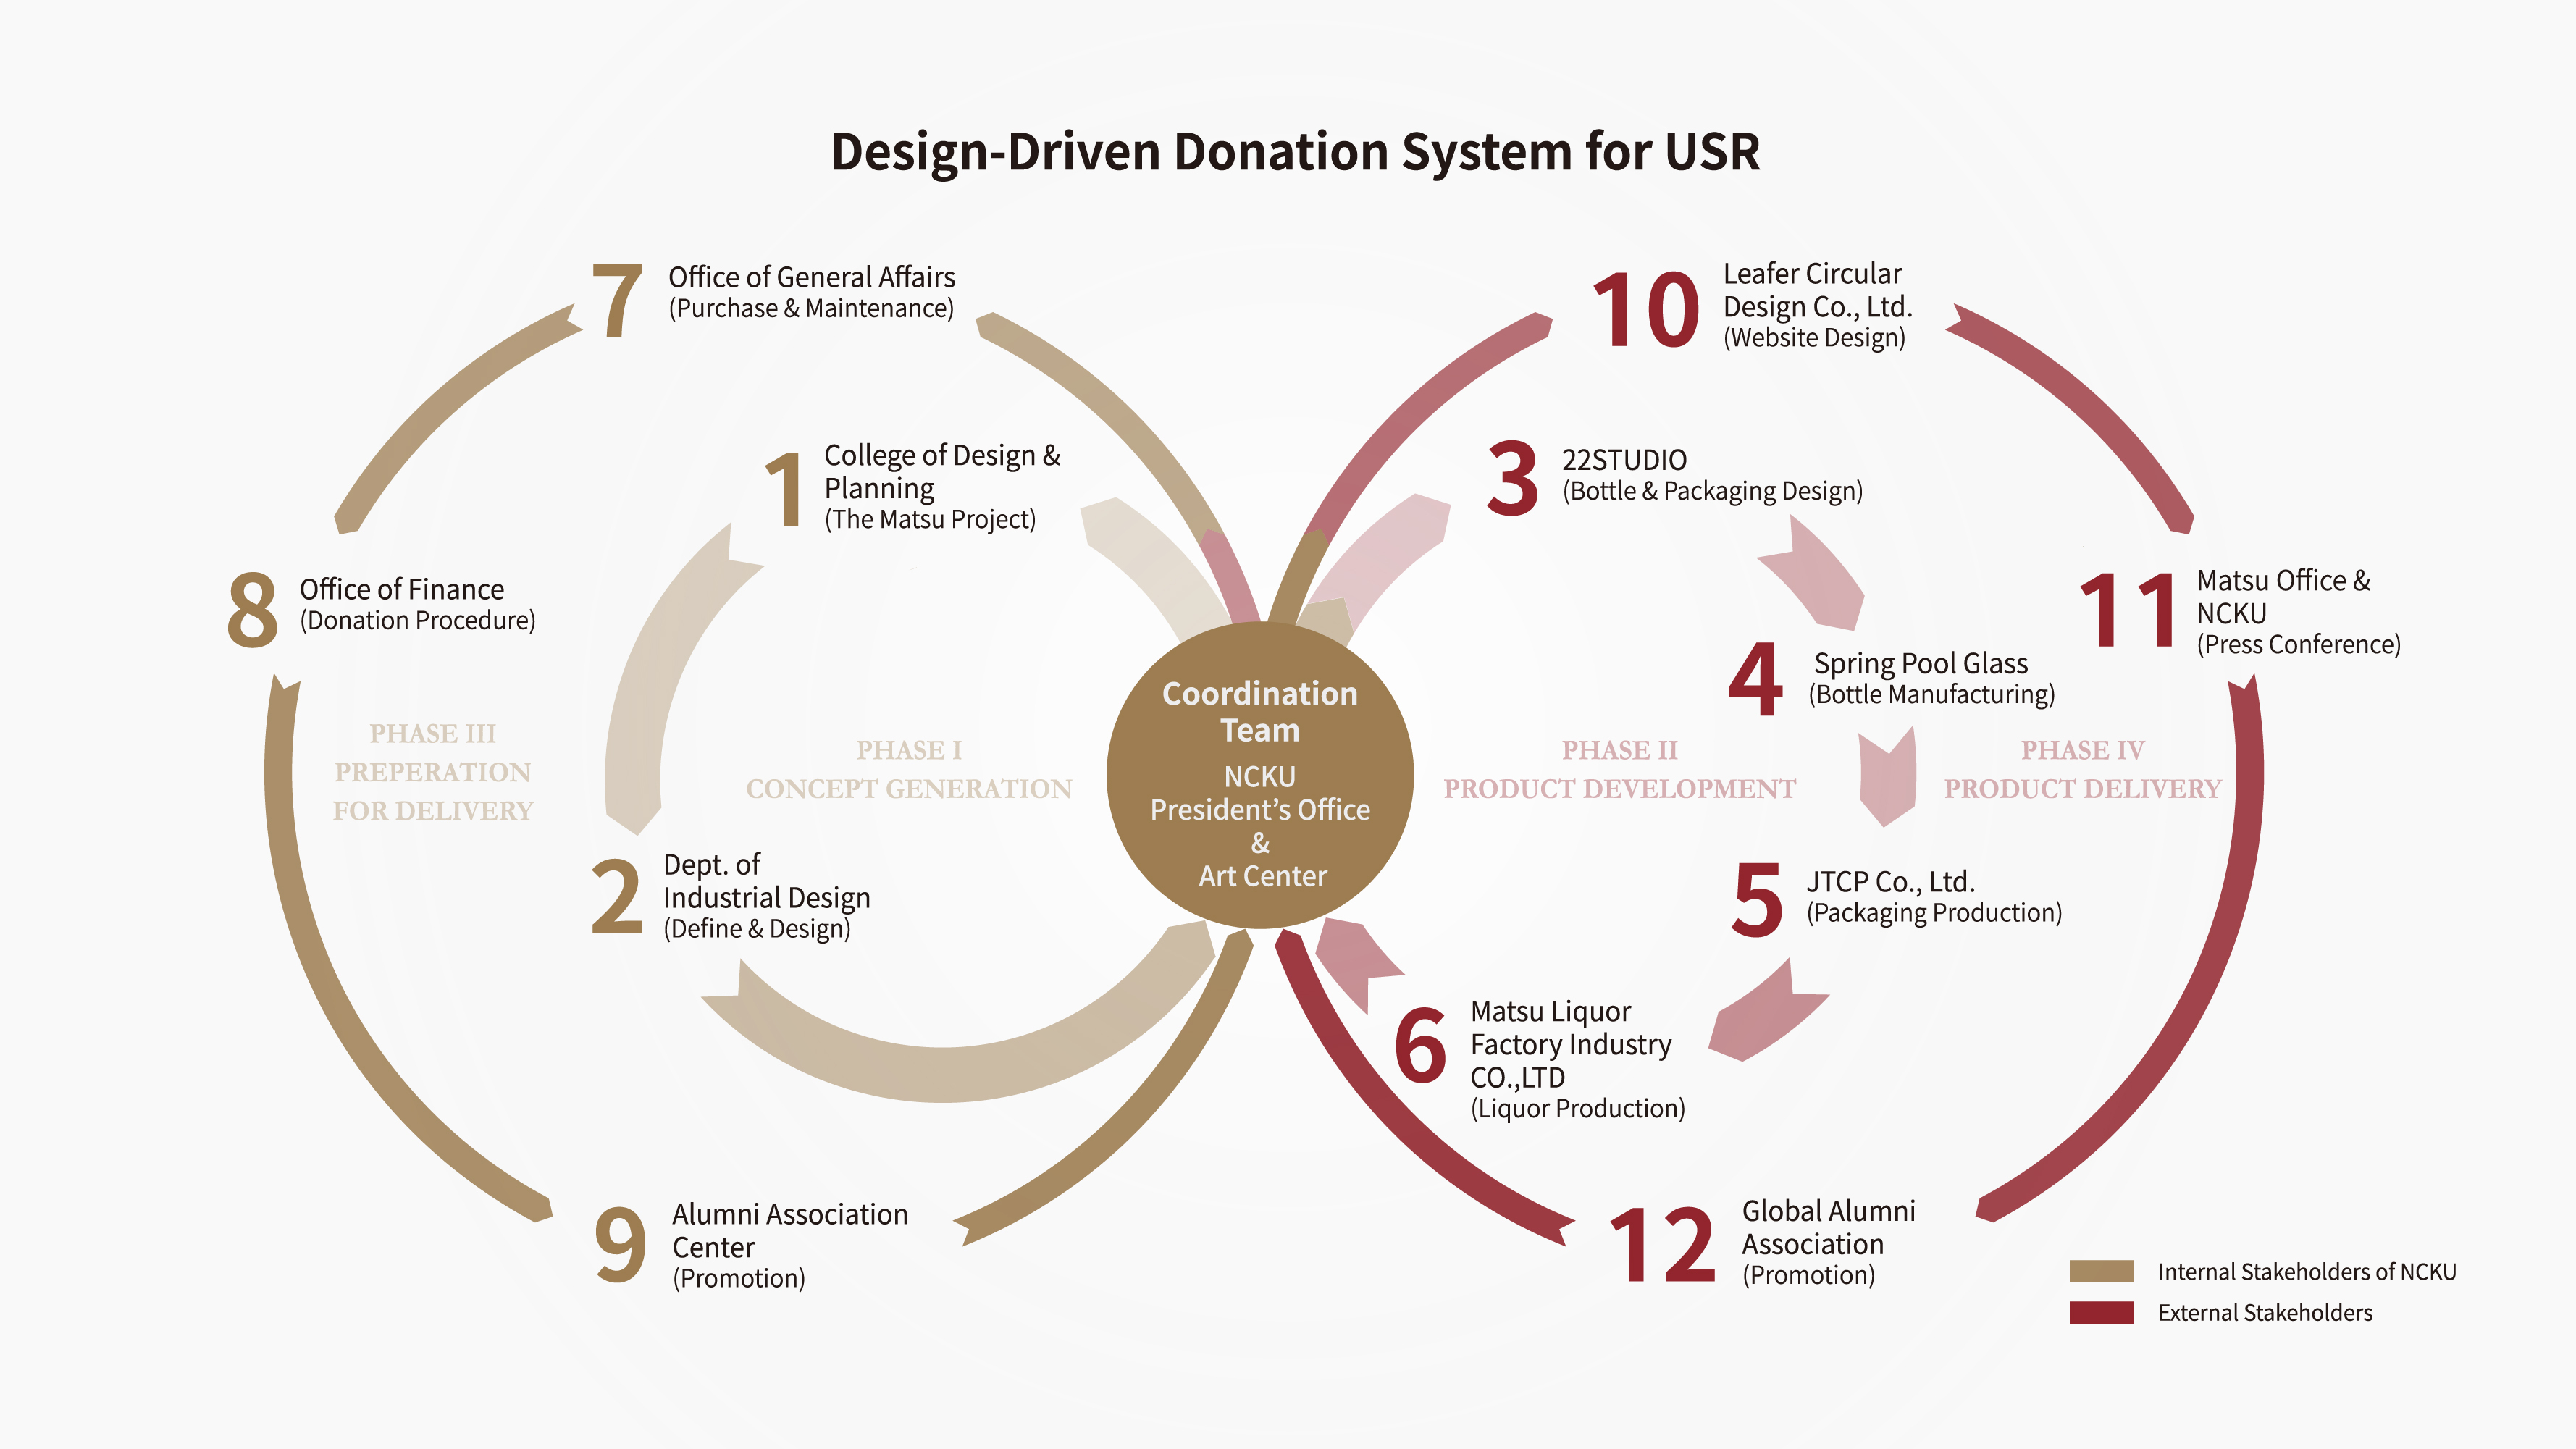 成⼤ 90 週年紀念酒以設計驅動共創的整合，形成推動⼤學社會責任小額捐款機制的新架構，可稱為“Design-Driven Donation System for USR“